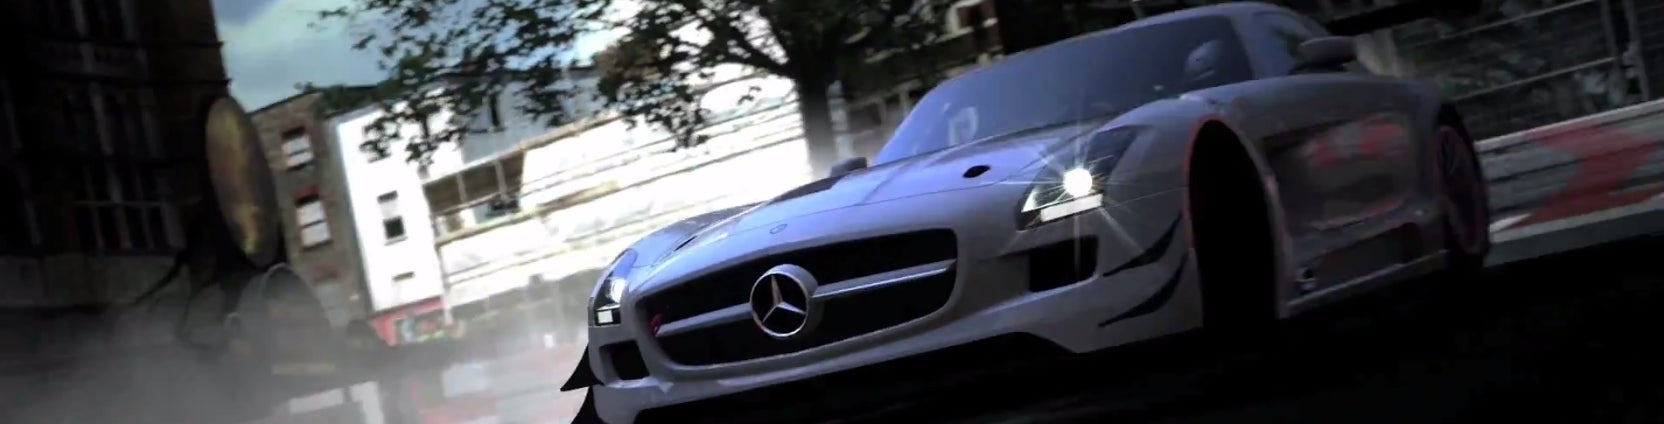 Image for Gran Turismo 6 prý má v sobě chybu umožňující získat kredity